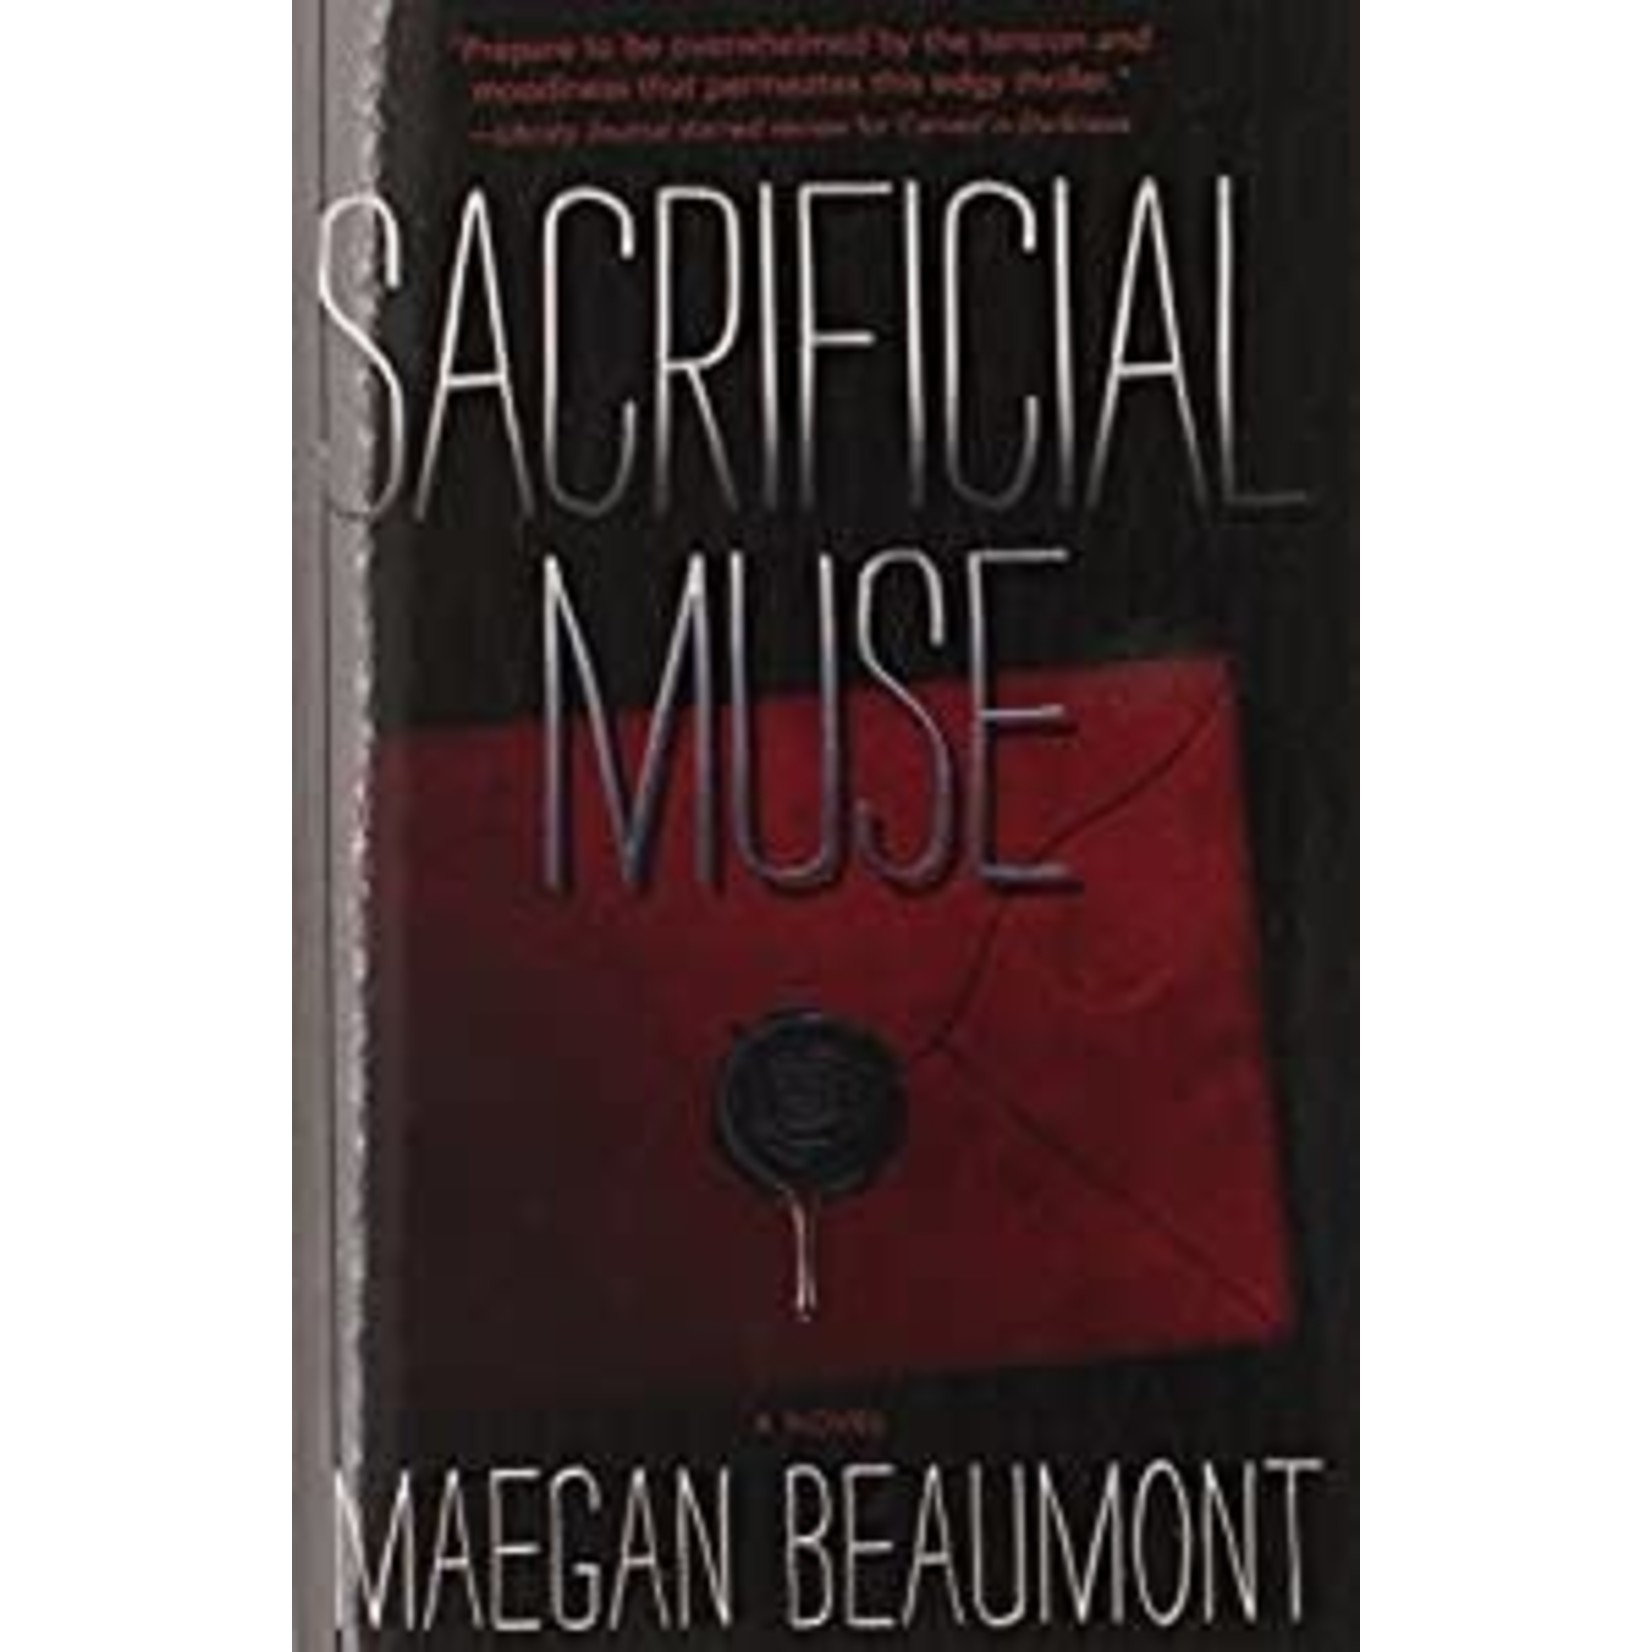 Beaumont, Maegan Beaumont, Maegan (RS) - Sacrificial Muse (TP)